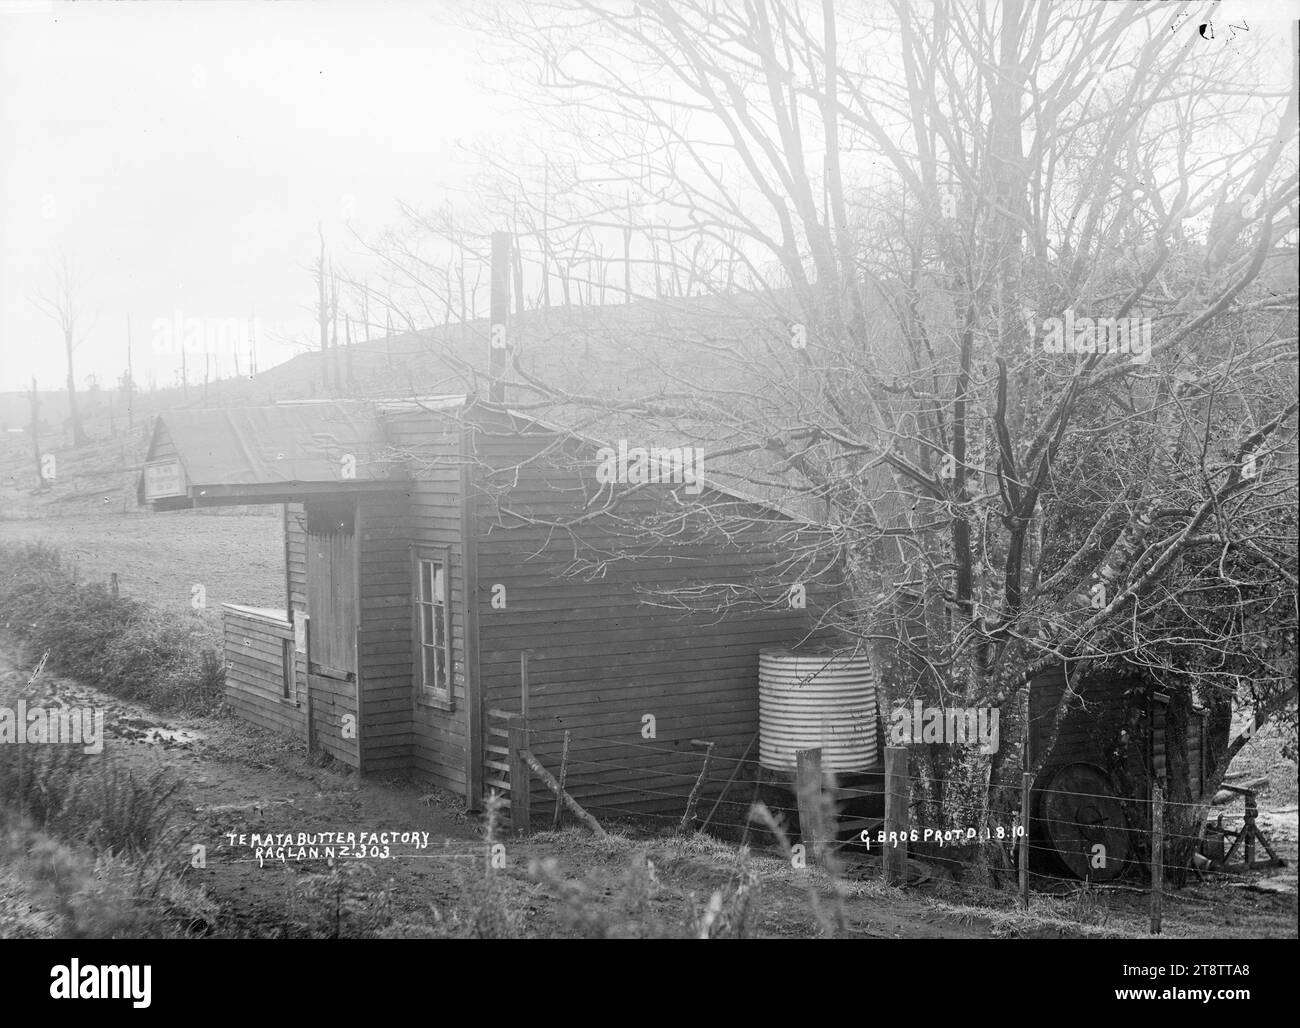 Te Mata Butter Factory, vicino a Raglan, nuova Zelanda, 1910, la te Mata Co-operative Butter Factory, un edificio in legno con un serbatoio d'acqua in ferro ondulato sulla sinistra. Presa il 1o agosto 1910 Foto Stock